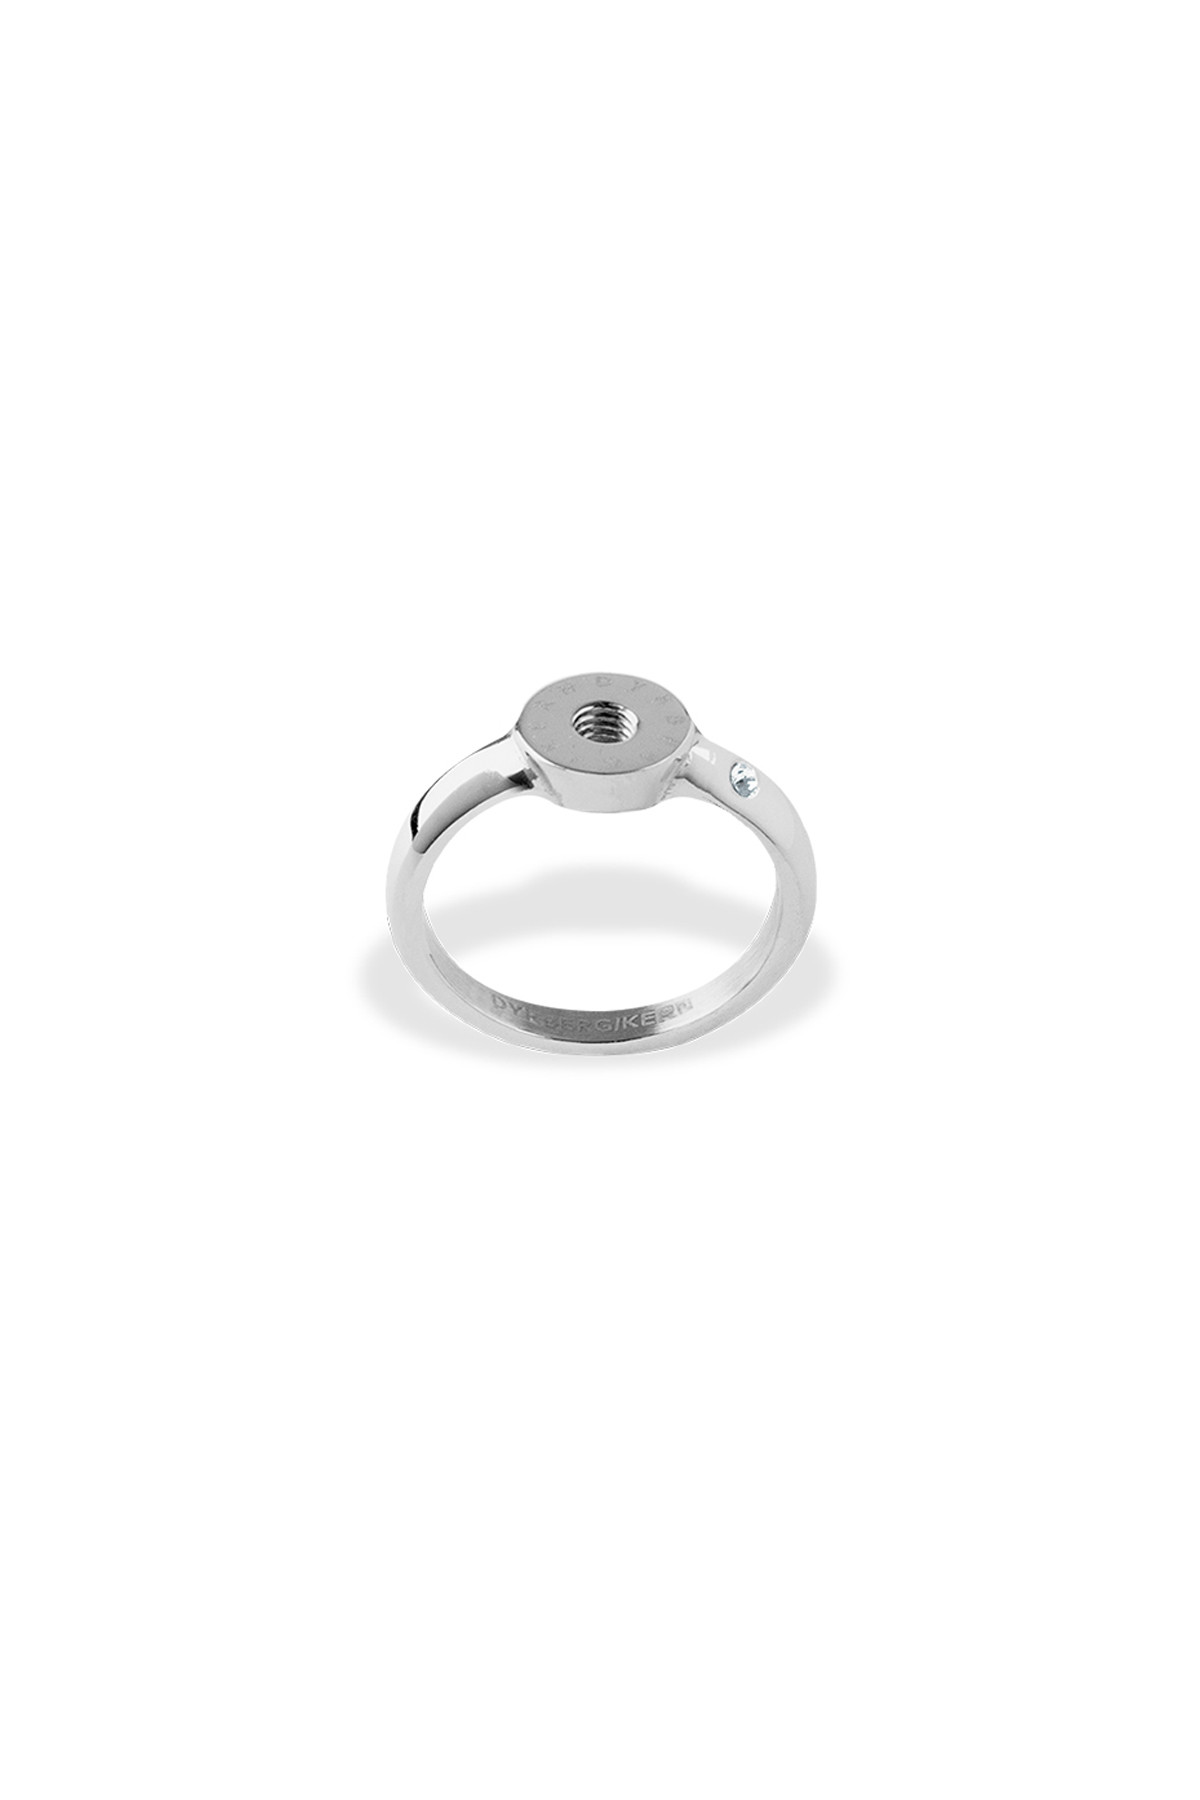 Billede af Dyrberg/Kern Ring Ring, Farve: Sølv, Størrelse: III/57, Dame